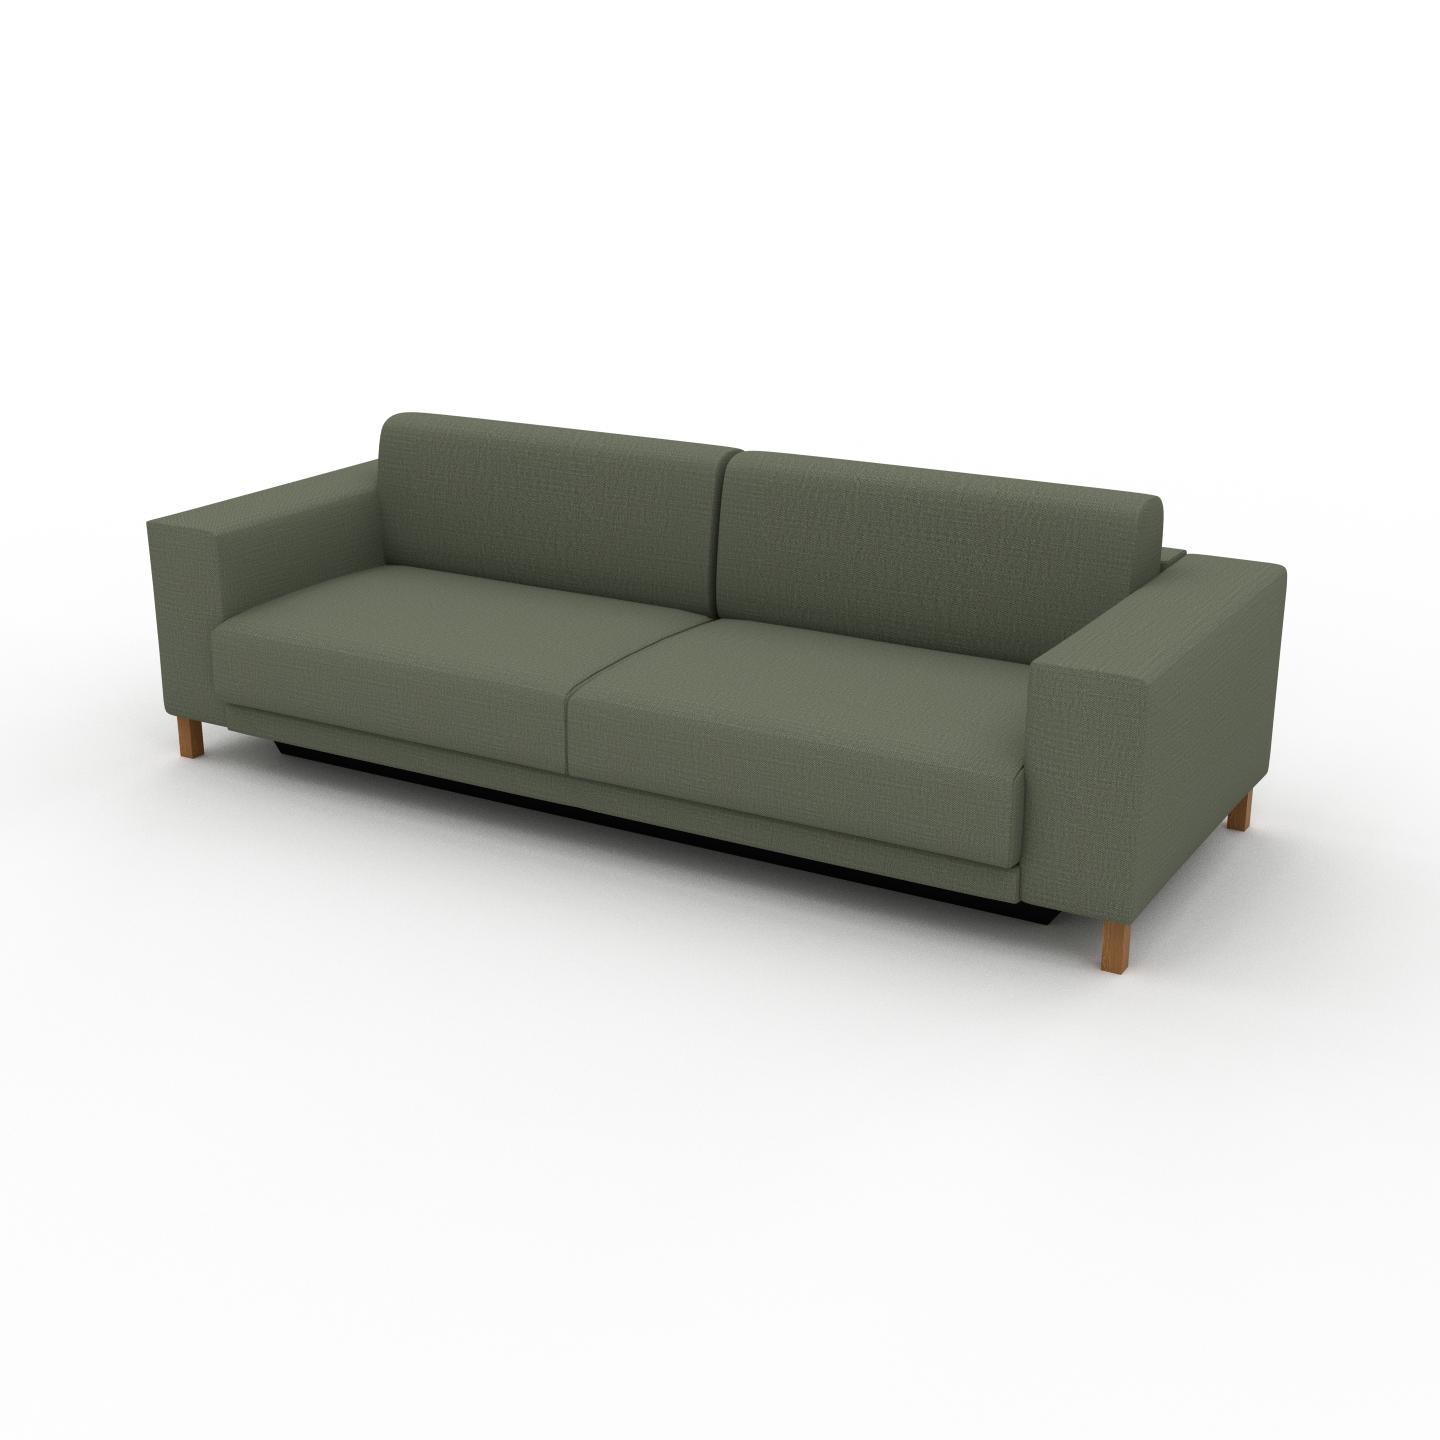 MYCS Sofa 3-Sitzer Olivgrün Webstoff - Elegantes, gemütliches 3-Sitzer Sofa: Hochwertige Qualität, einzigartiges Design - 248 x 75 x 98 cm, konfigurierbar